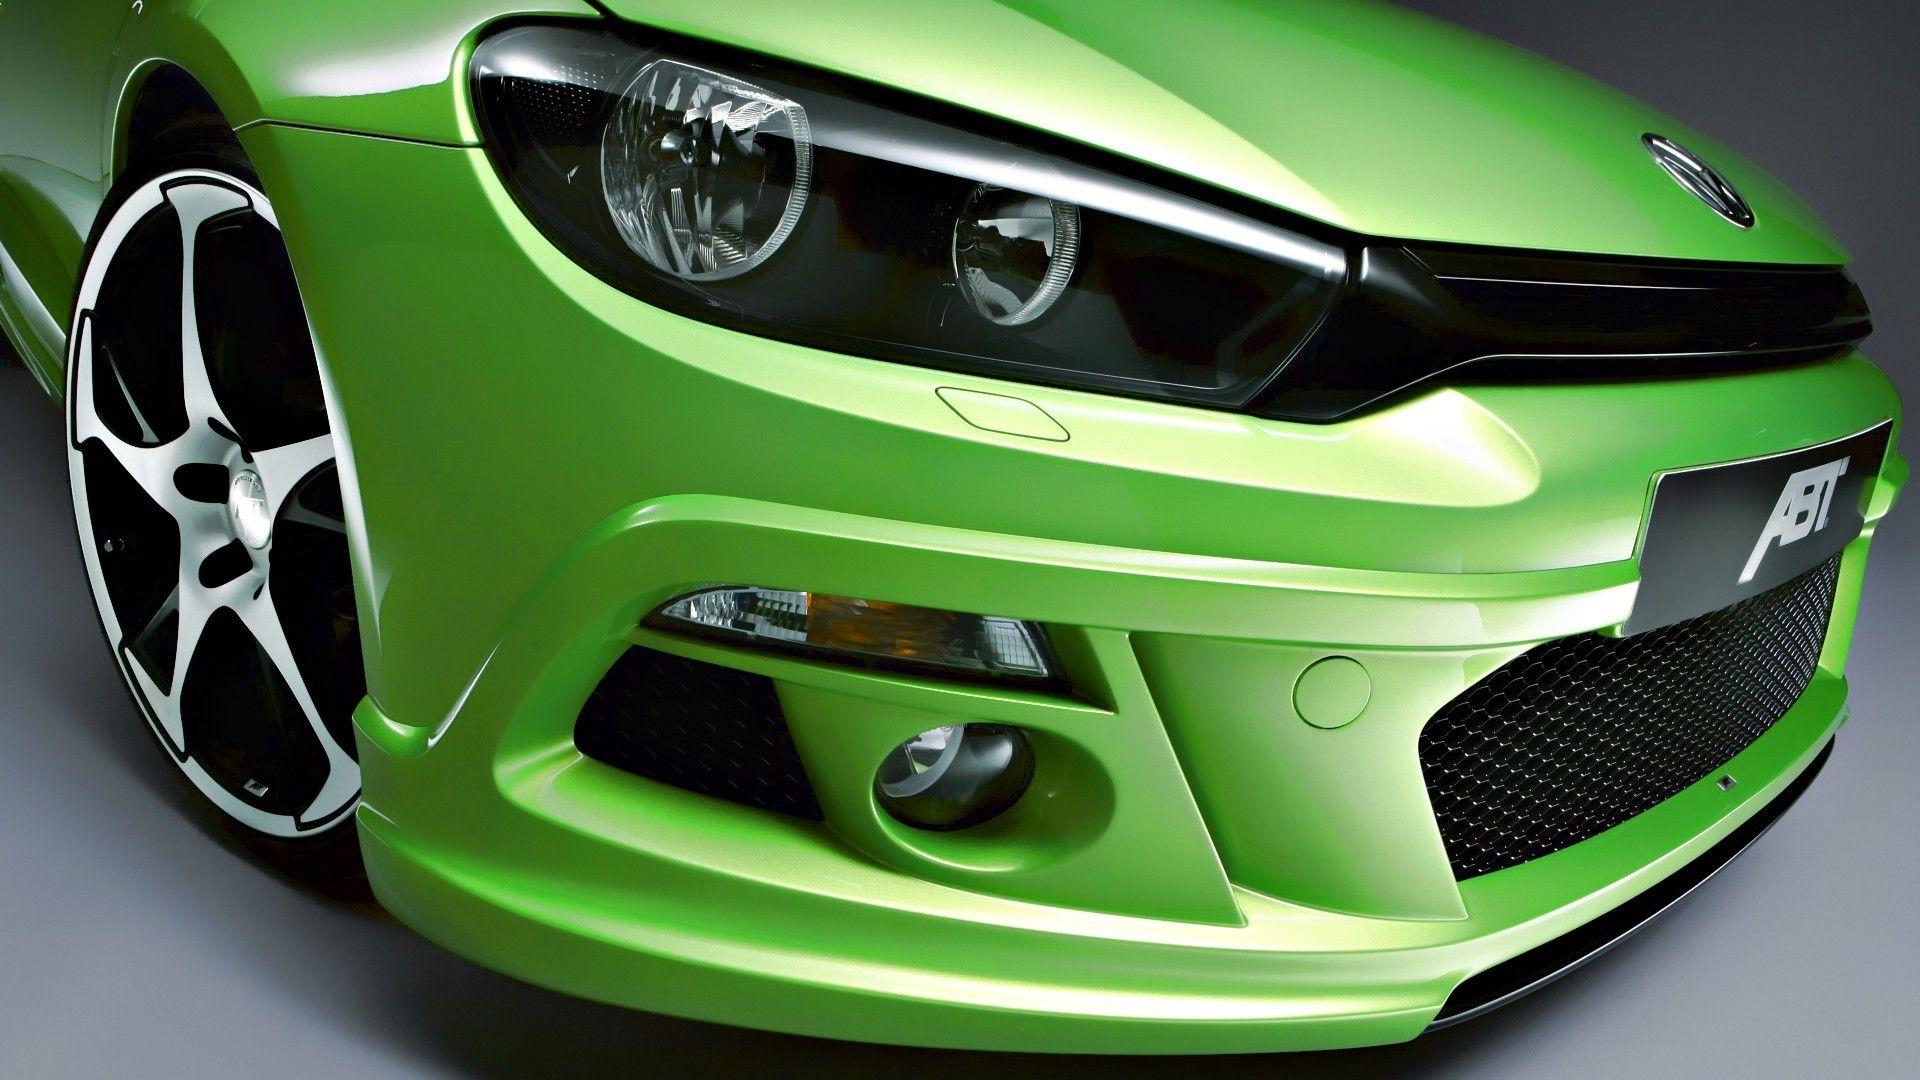 Green Car Wallpaper For Mobile